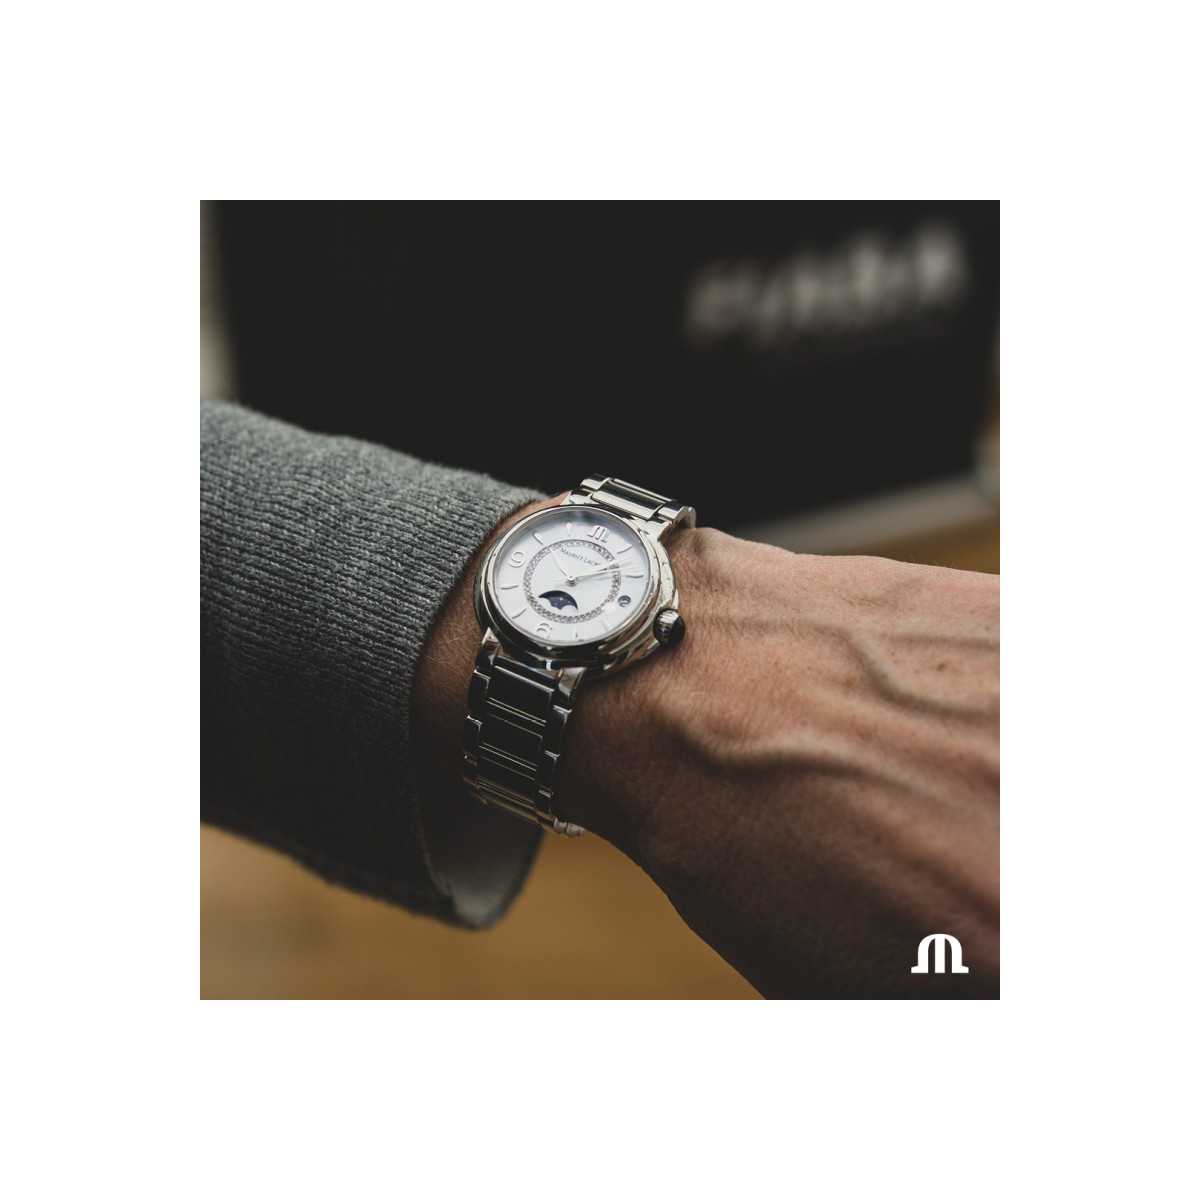 Reloj Maurice Lacroix Fiaba FA1084-SS002-170-1